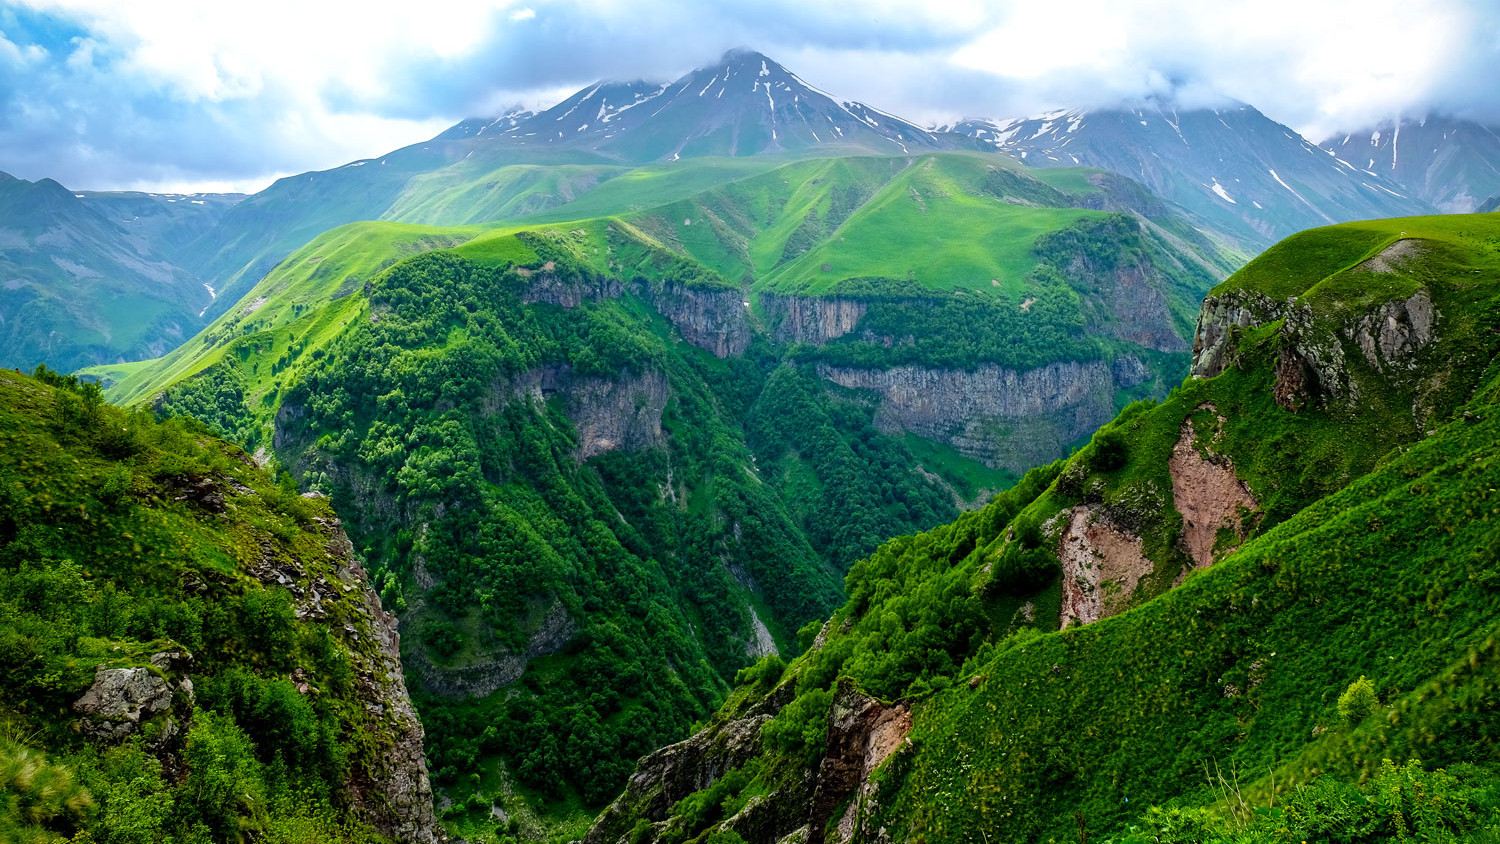 Khevi in Caucasus Mountains